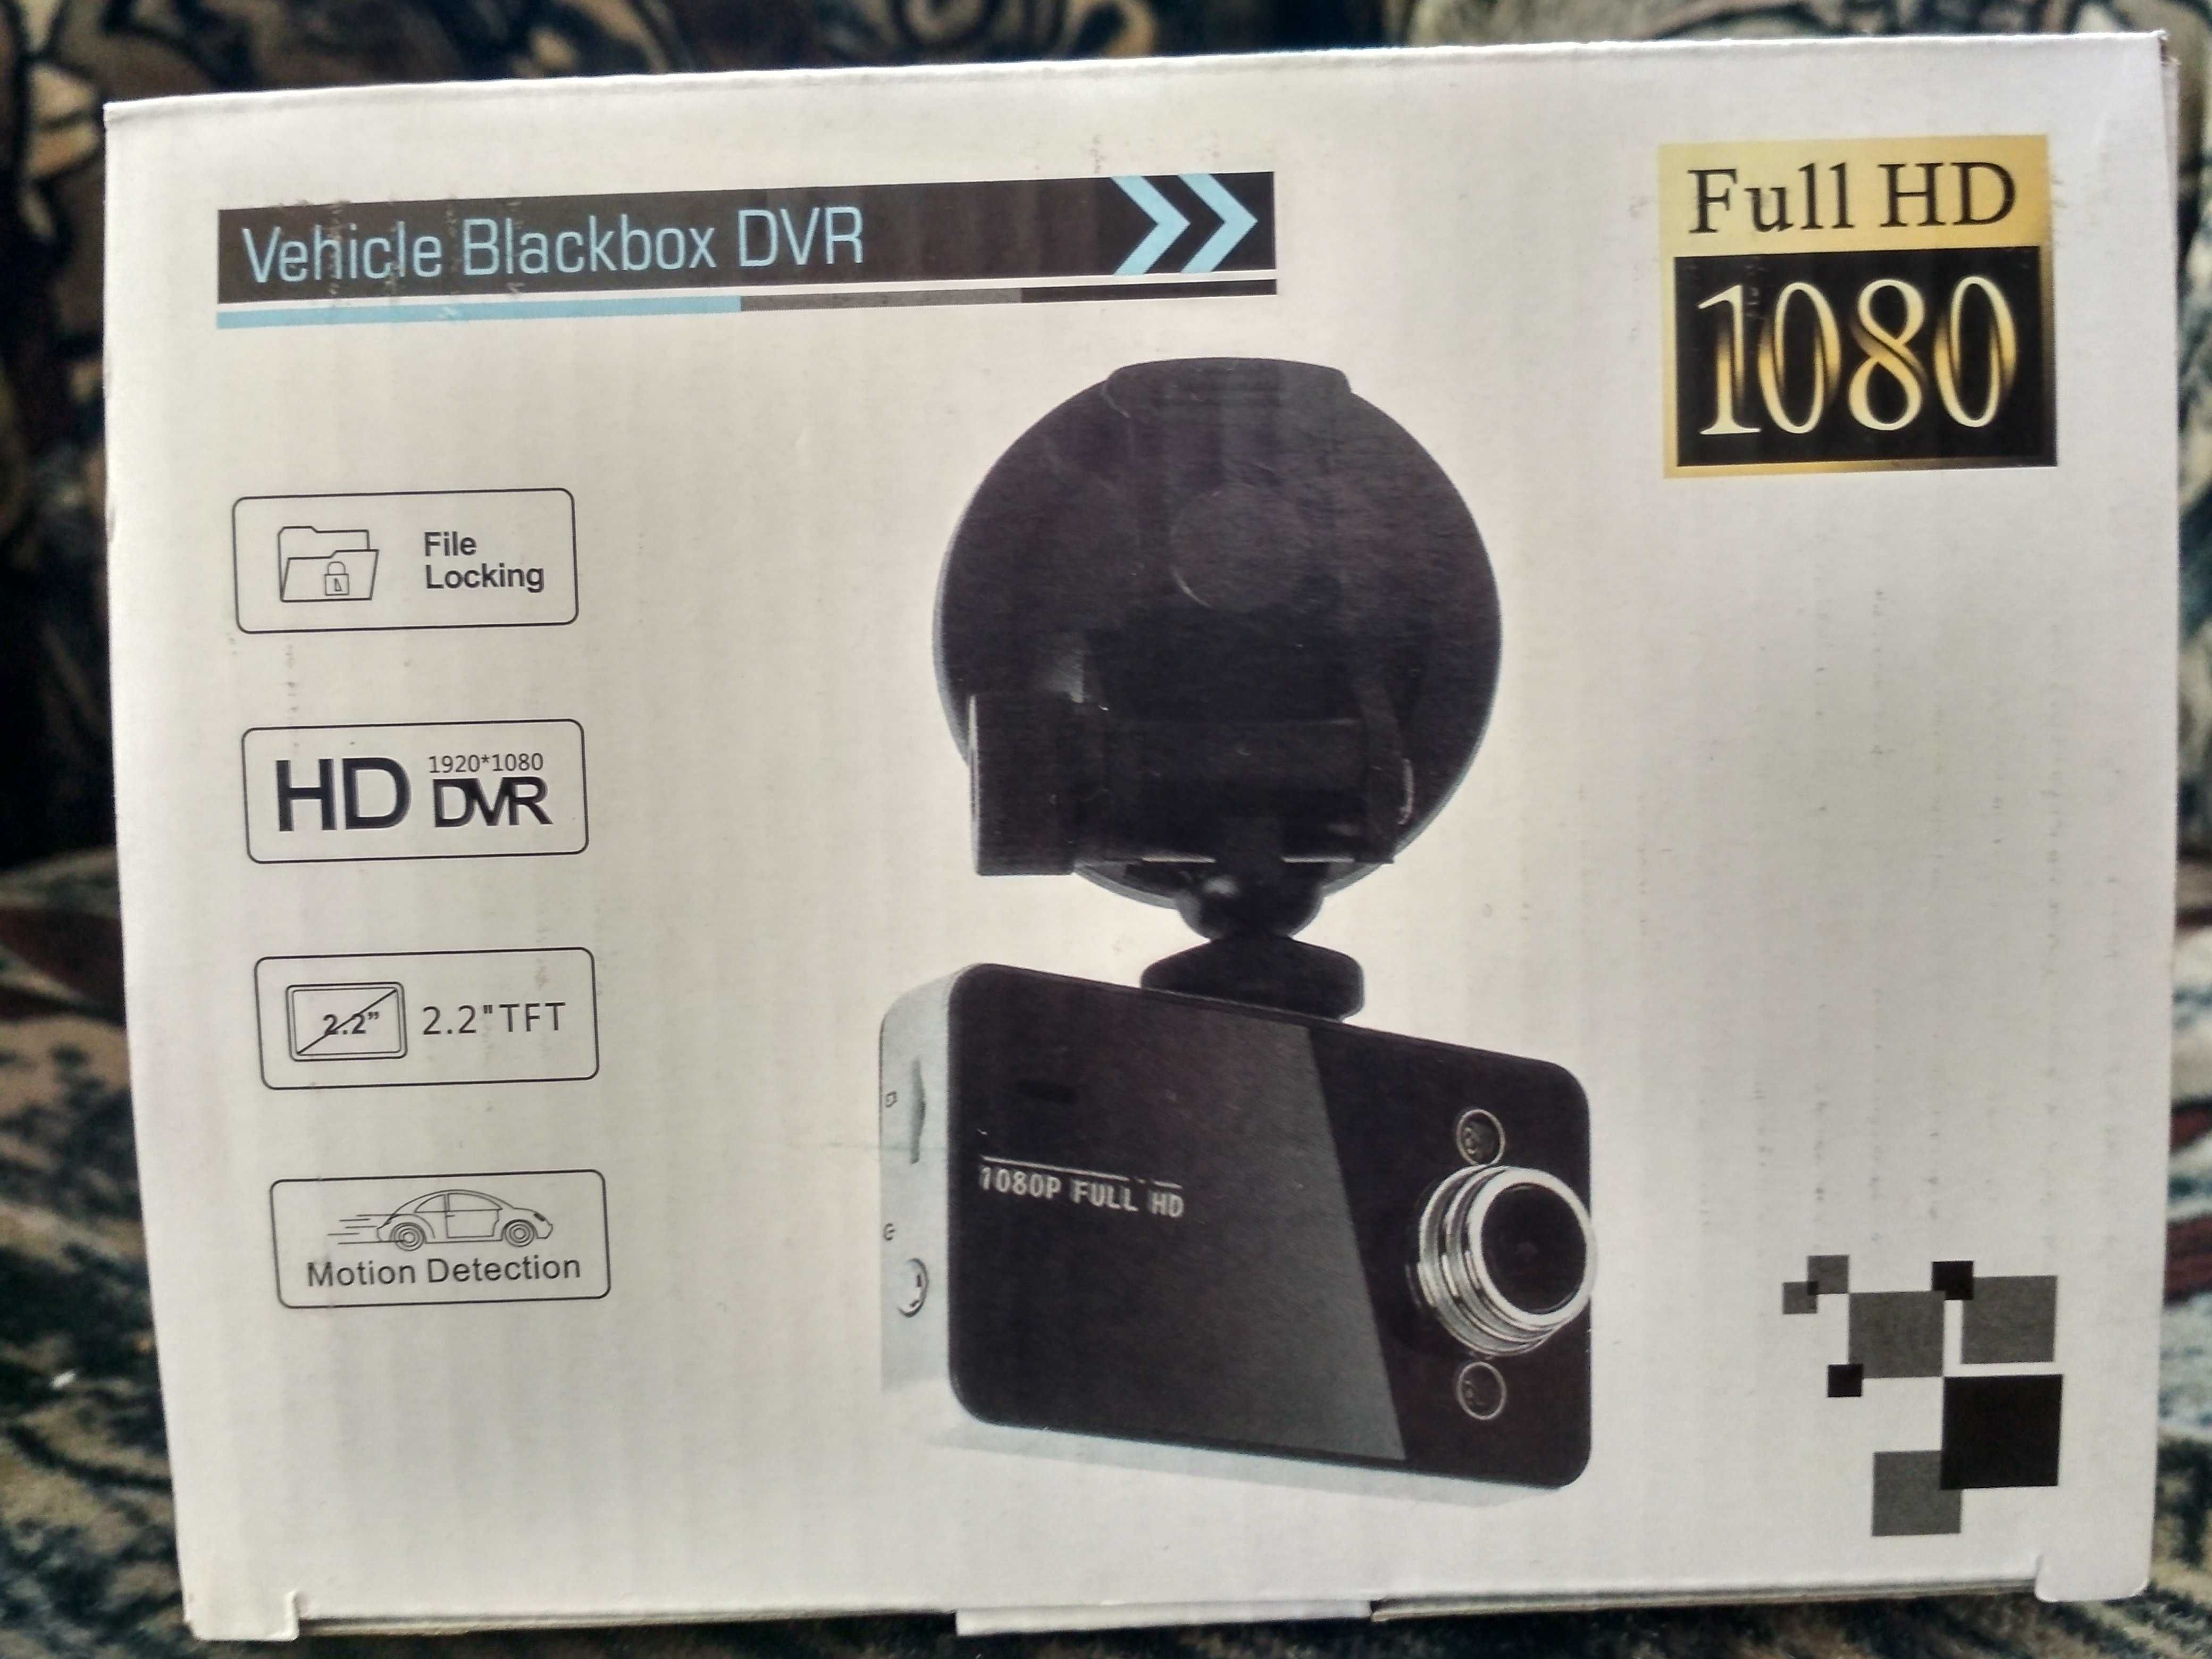 Видеорегистратор Hawkeye Full HD в упаковке